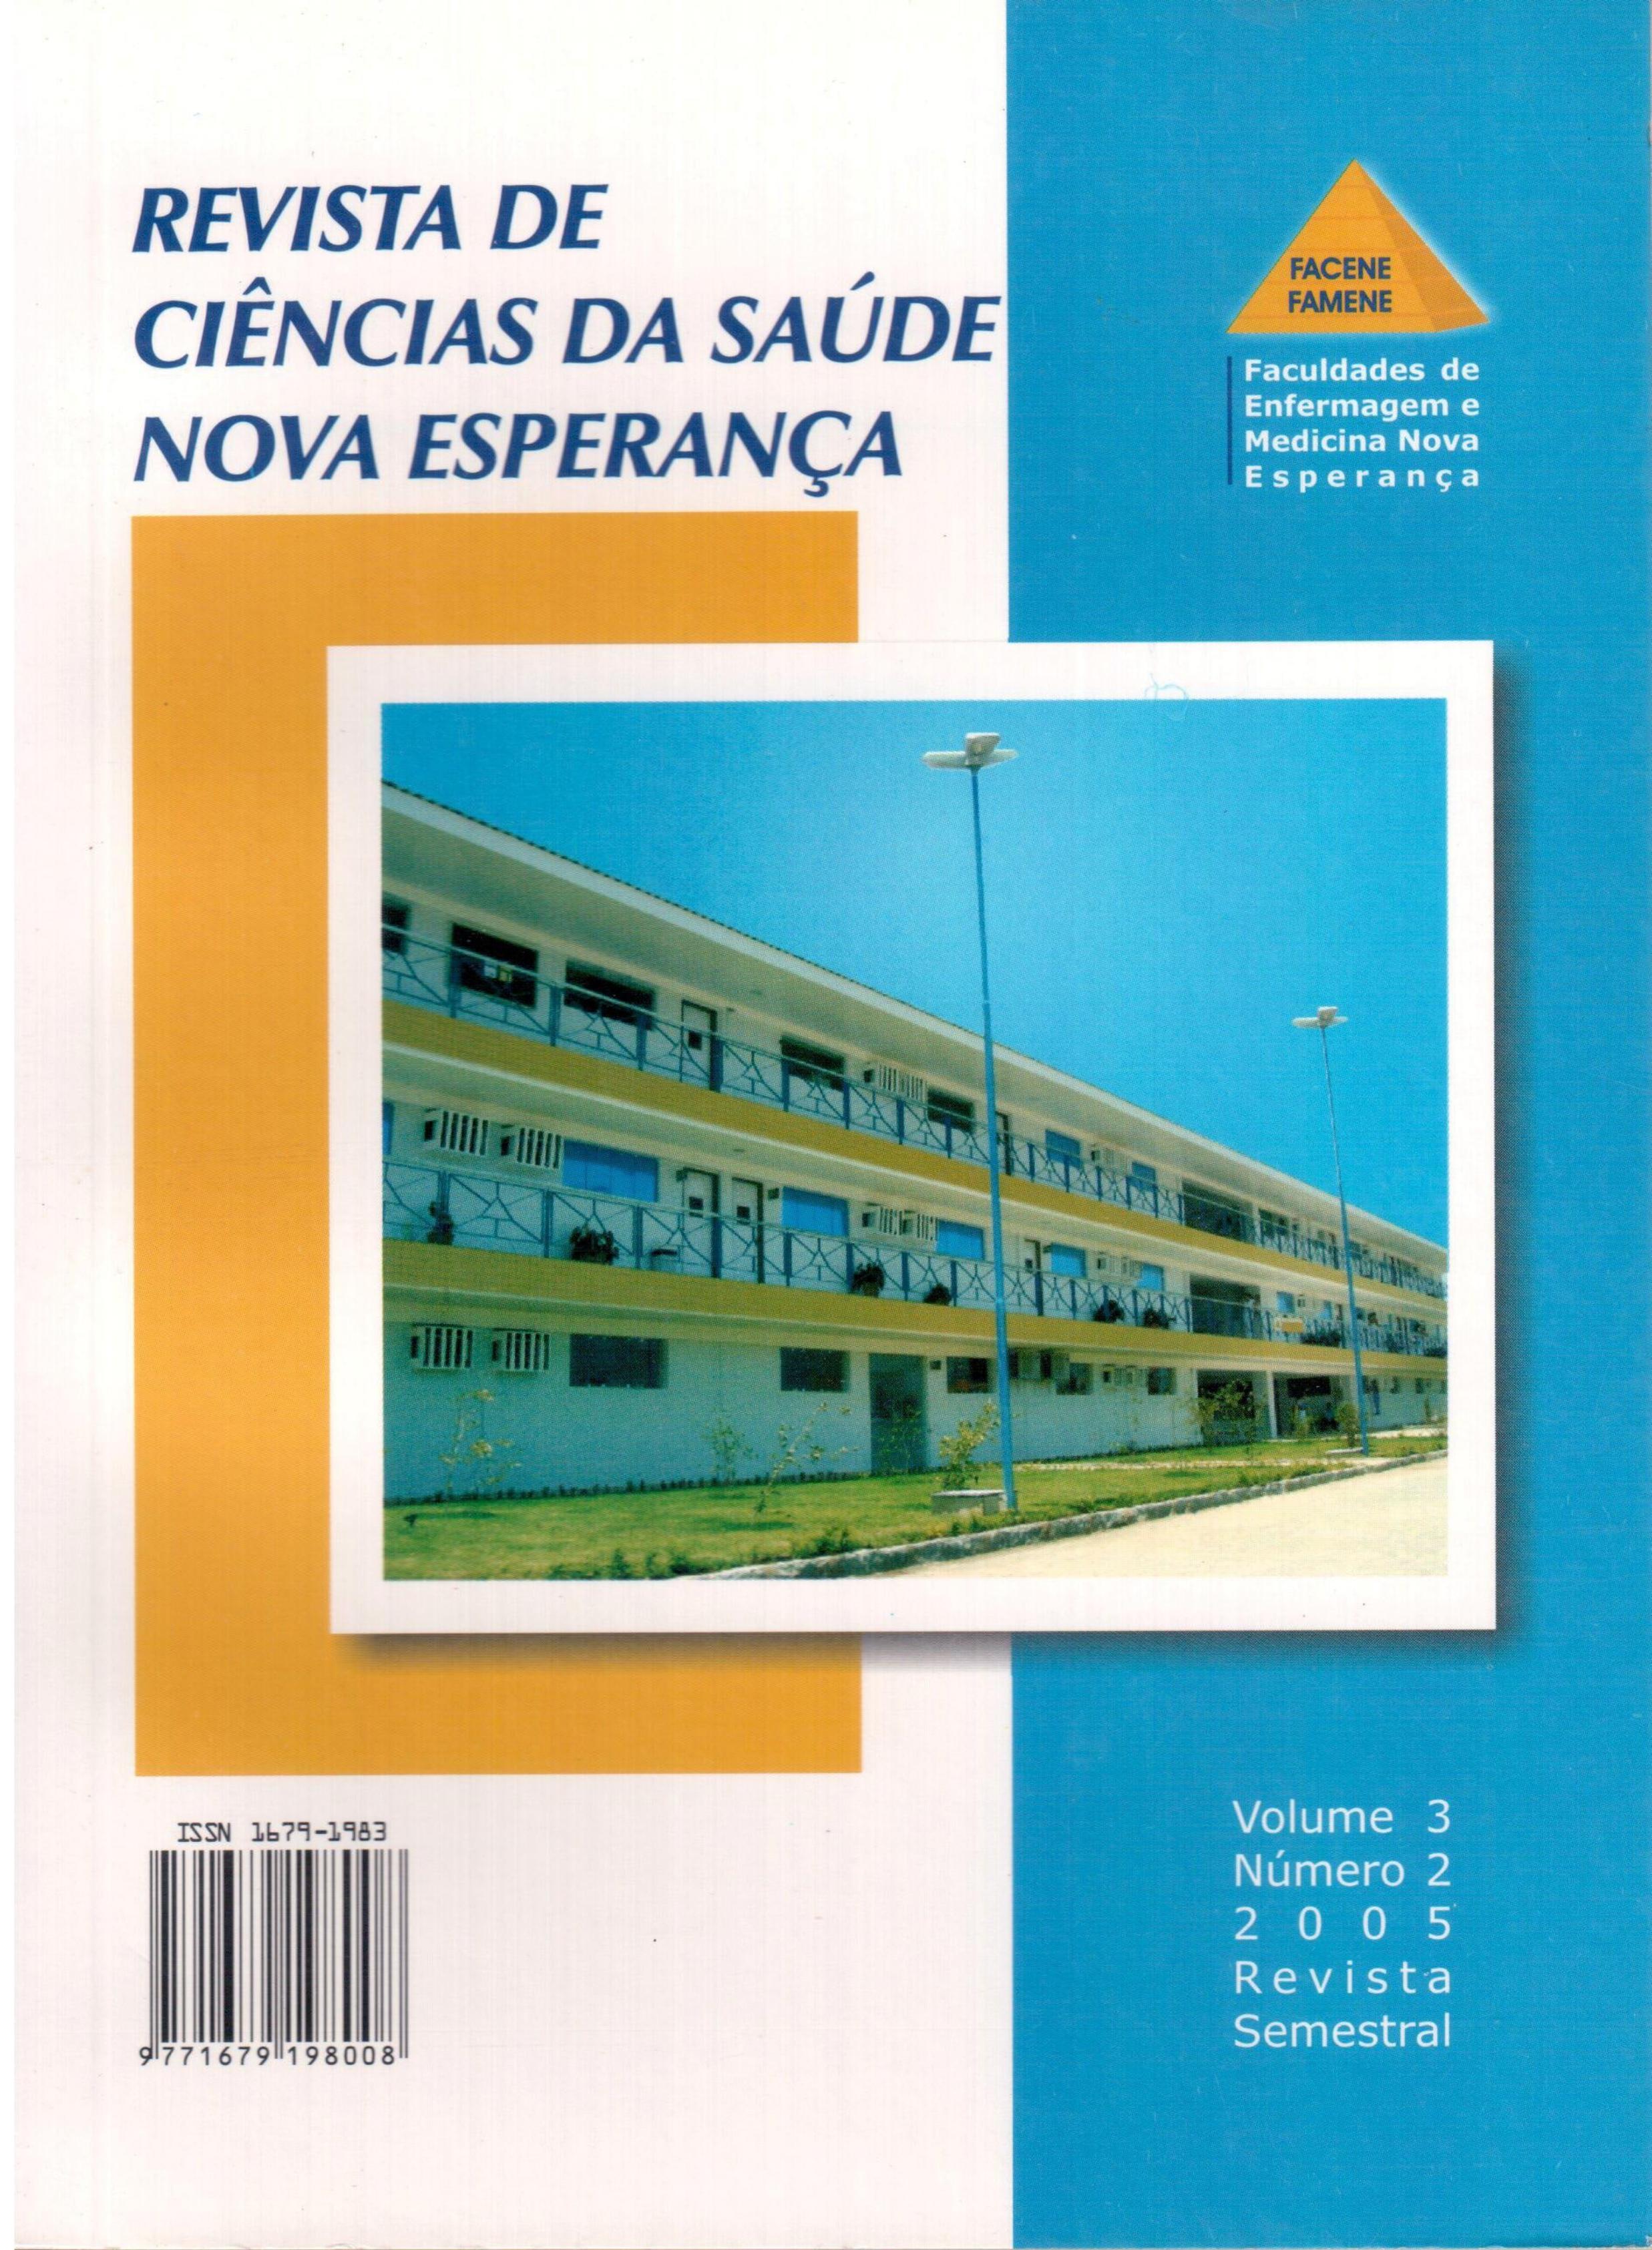 					Visualizar v. 3 n. 2 (2005): Revista de Ciências da Saúde Nova Esperança
				